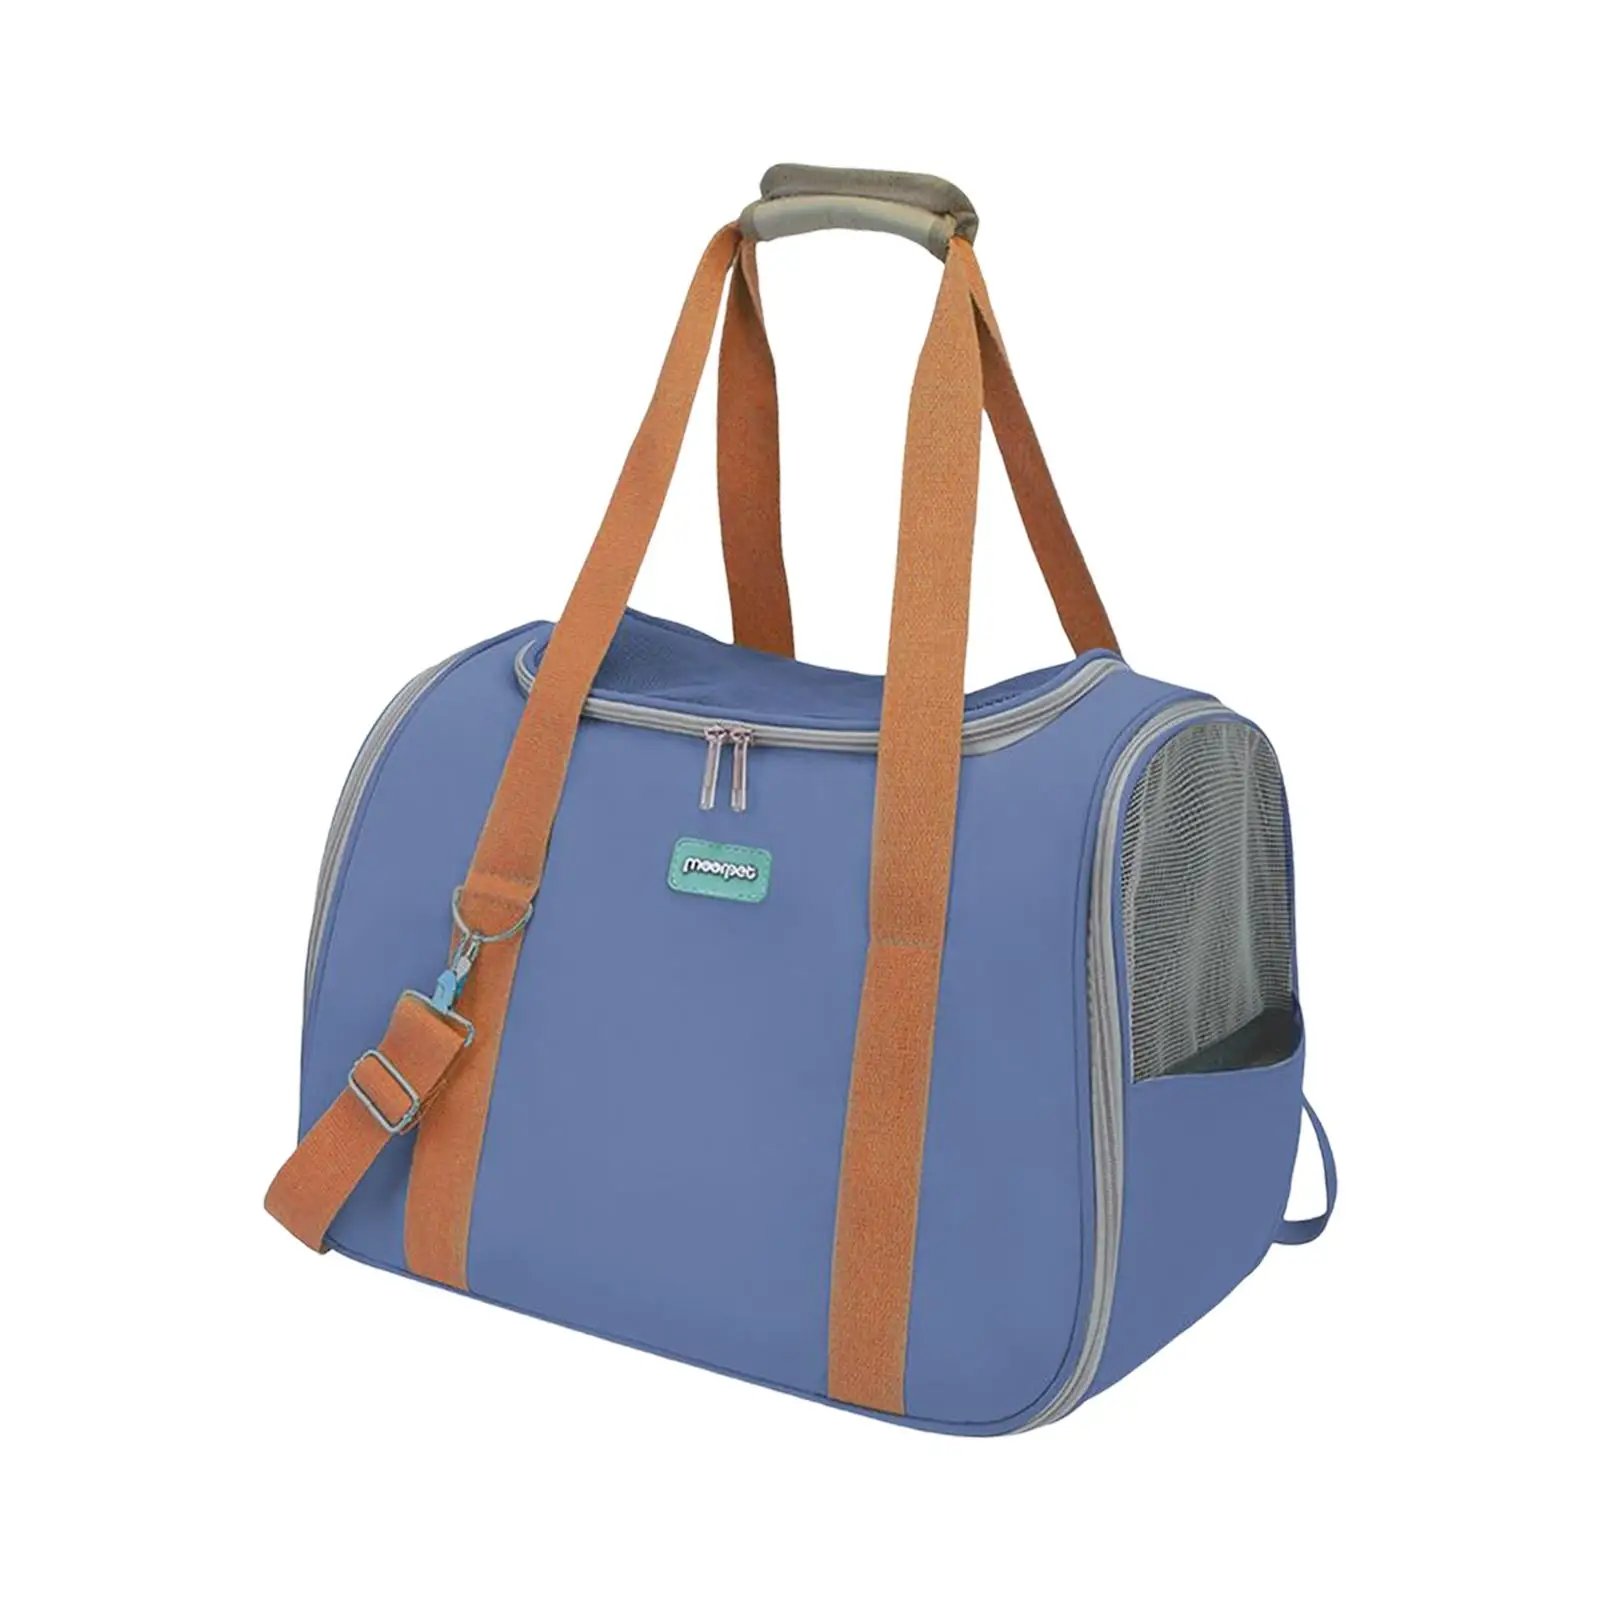 Cat Carrier Bag with Adjustable Shoulder Strap Breathable Mesh Portable Pet Travel Bag Dog Handbag for Walking Traveling Outdoor